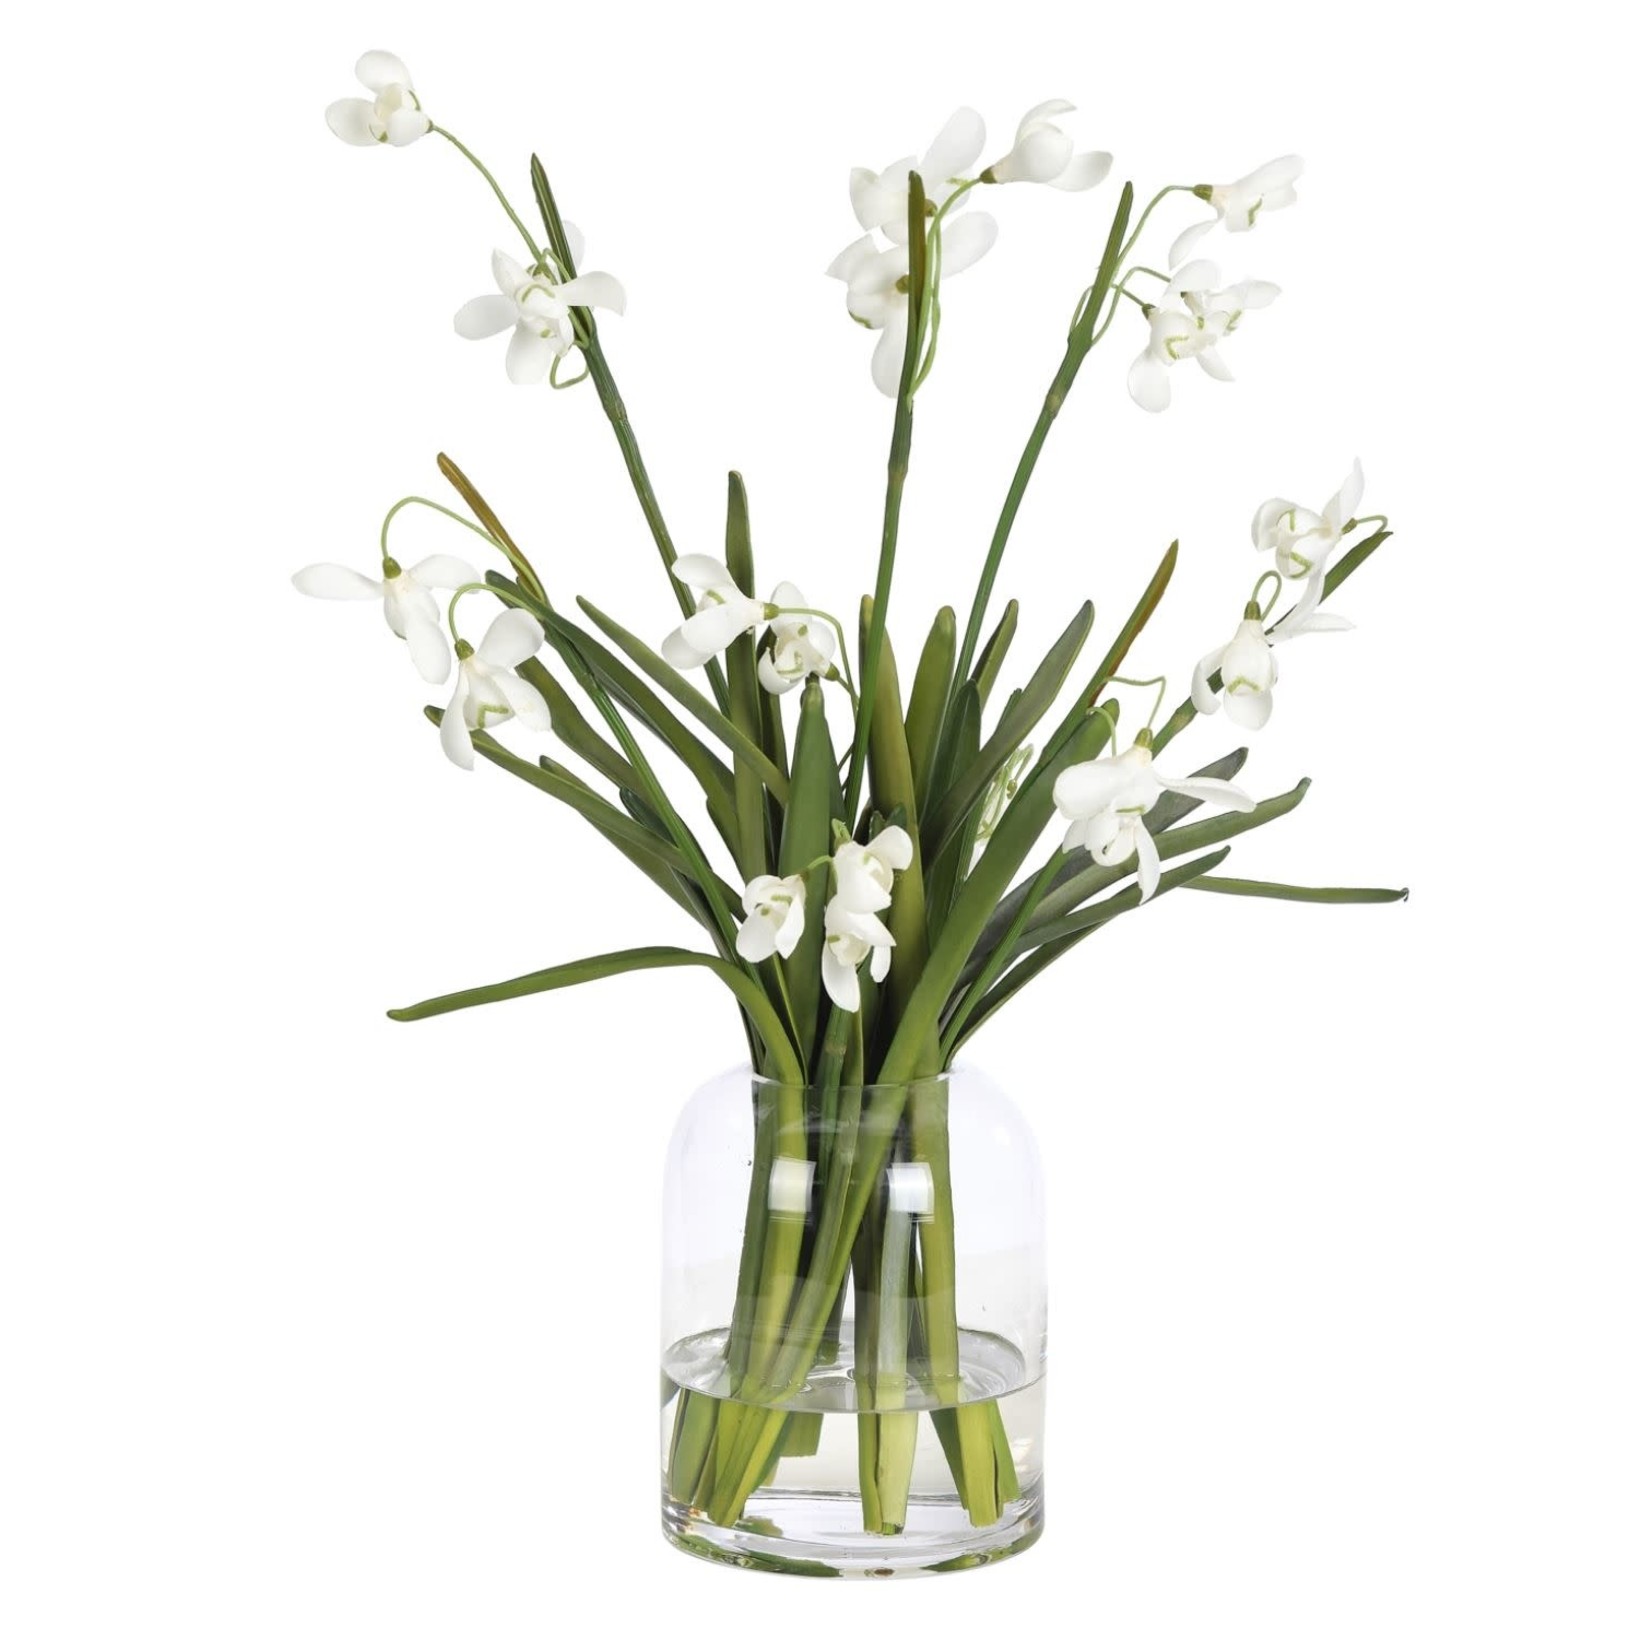 Mickler & Co. Snowdrop in Glass Vase